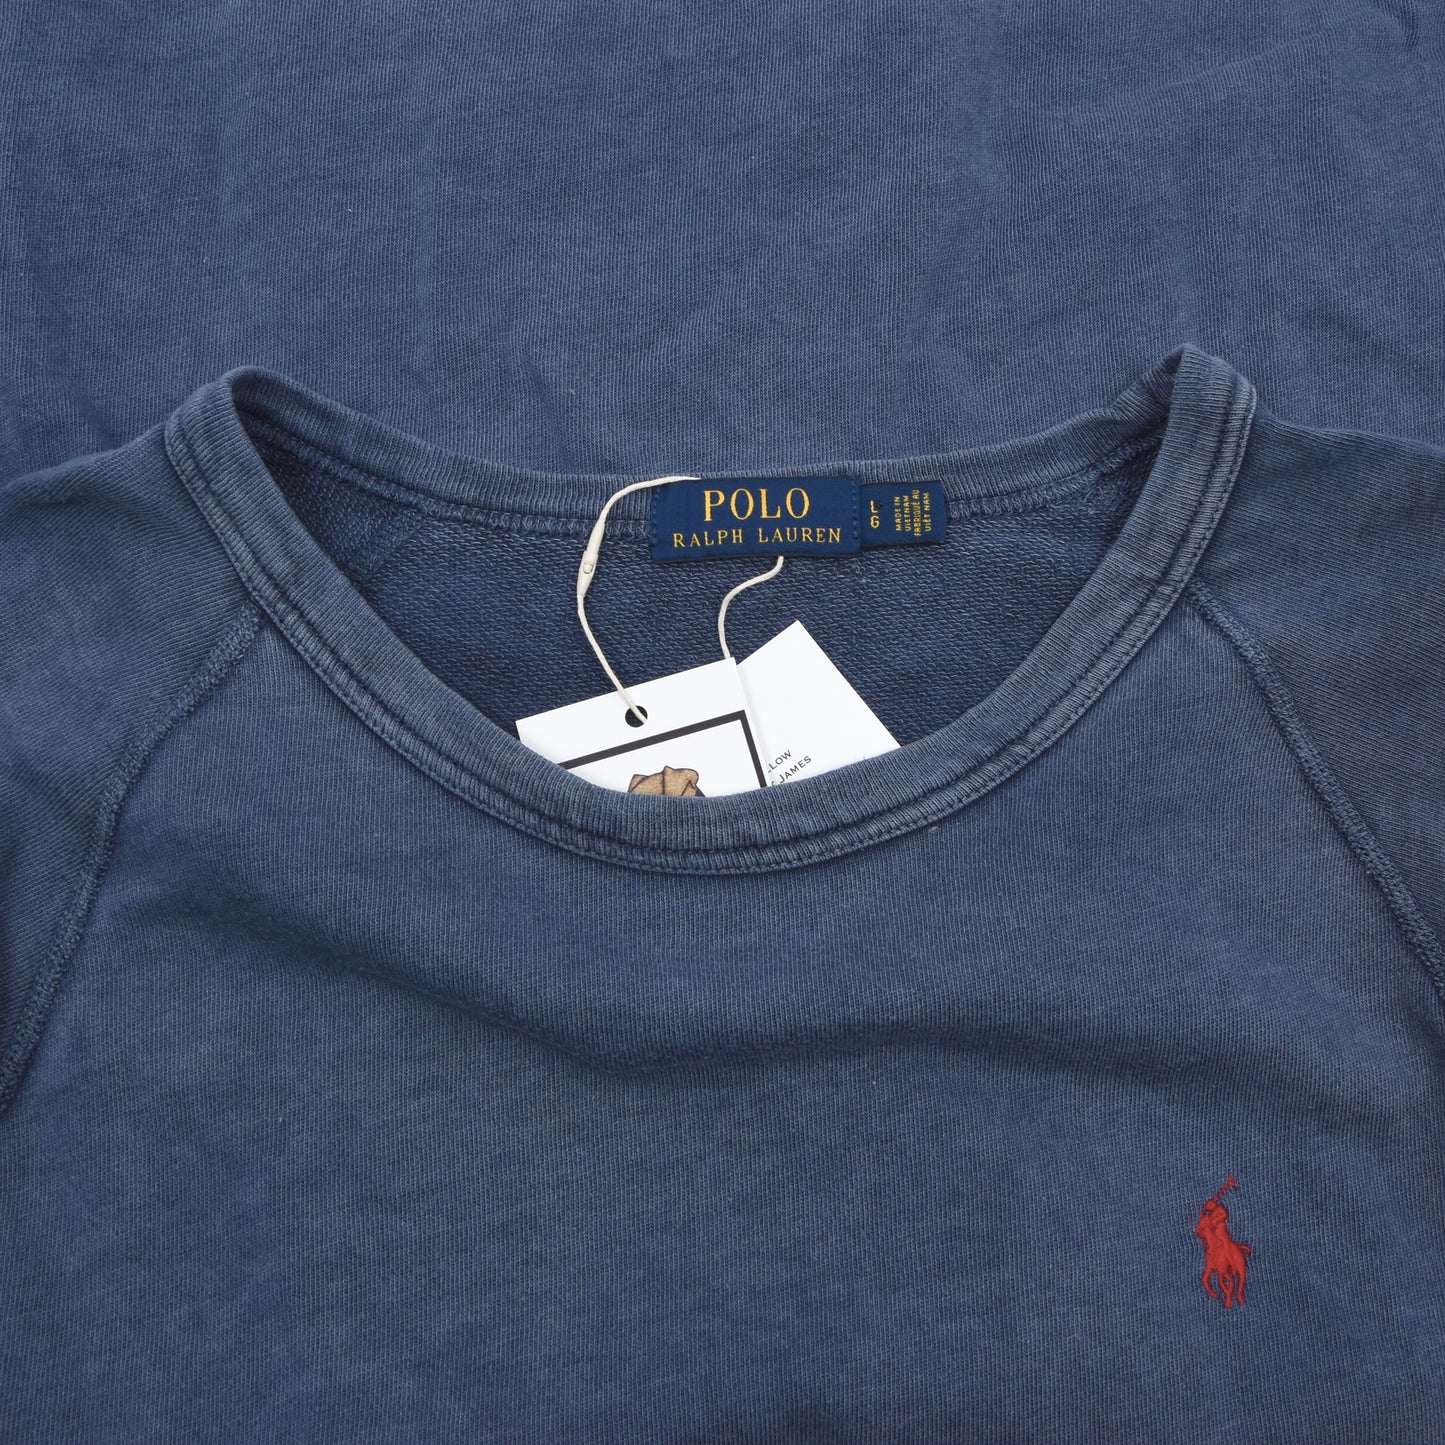 Polo Ralph Lauren Lightweight Sweatshirt Size L - Blue